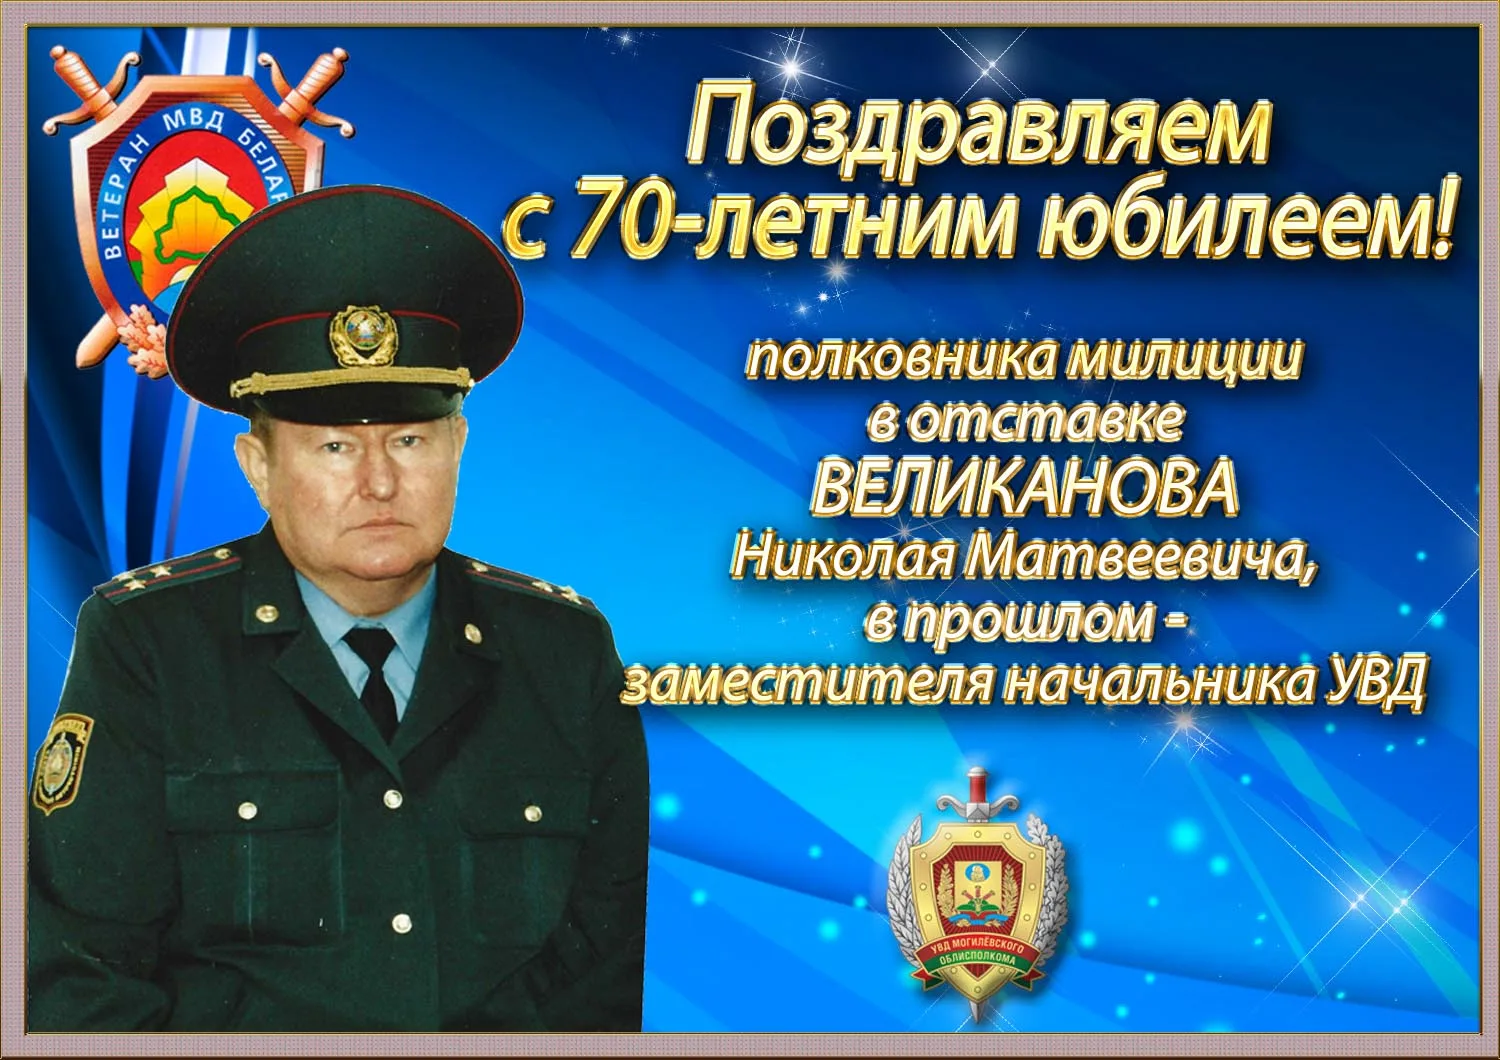 Фото Поздравления с днем рождения Генерал-полковнику #79